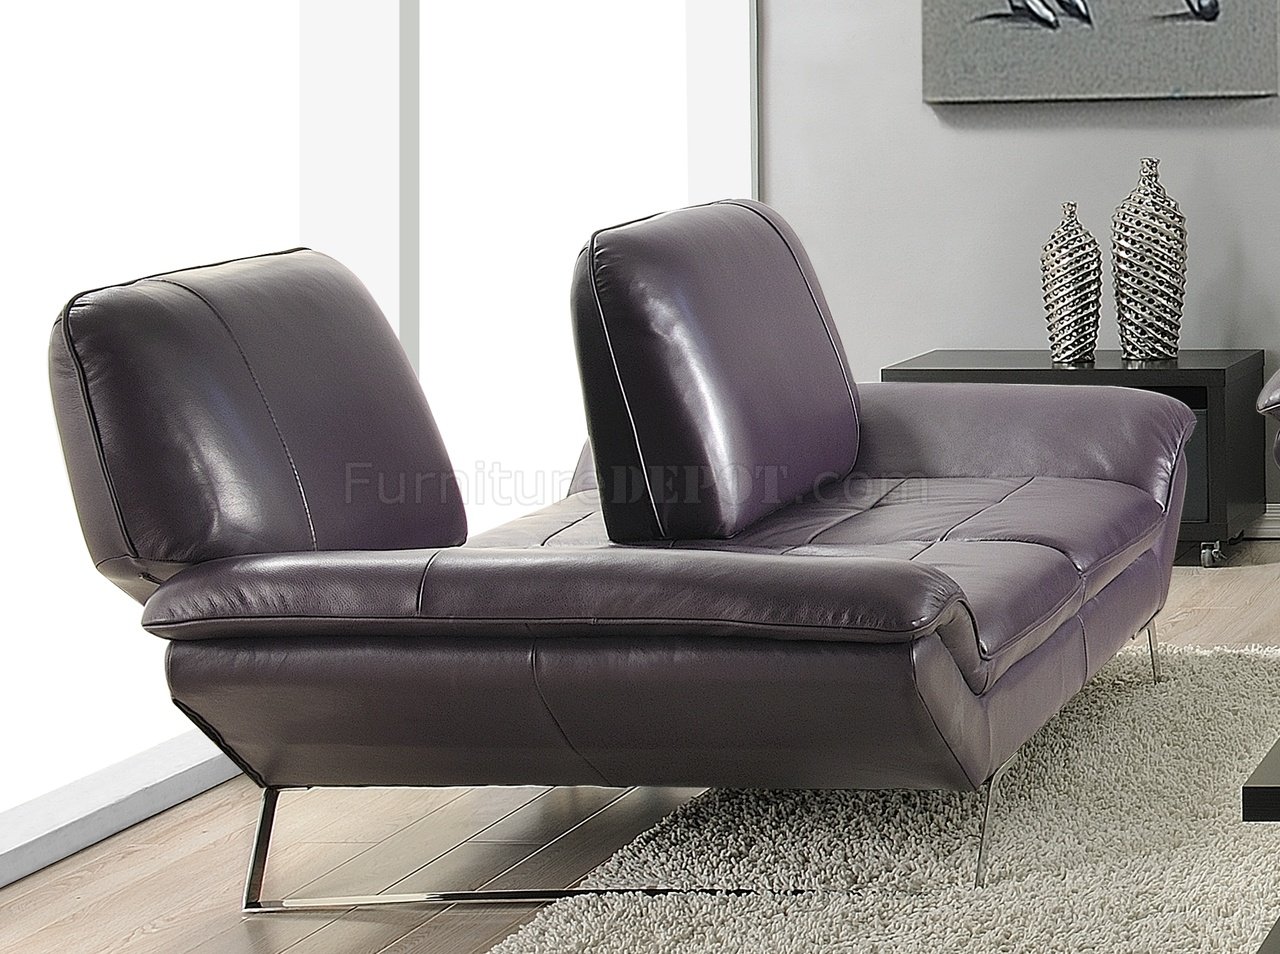 eggplant colored leather sofa